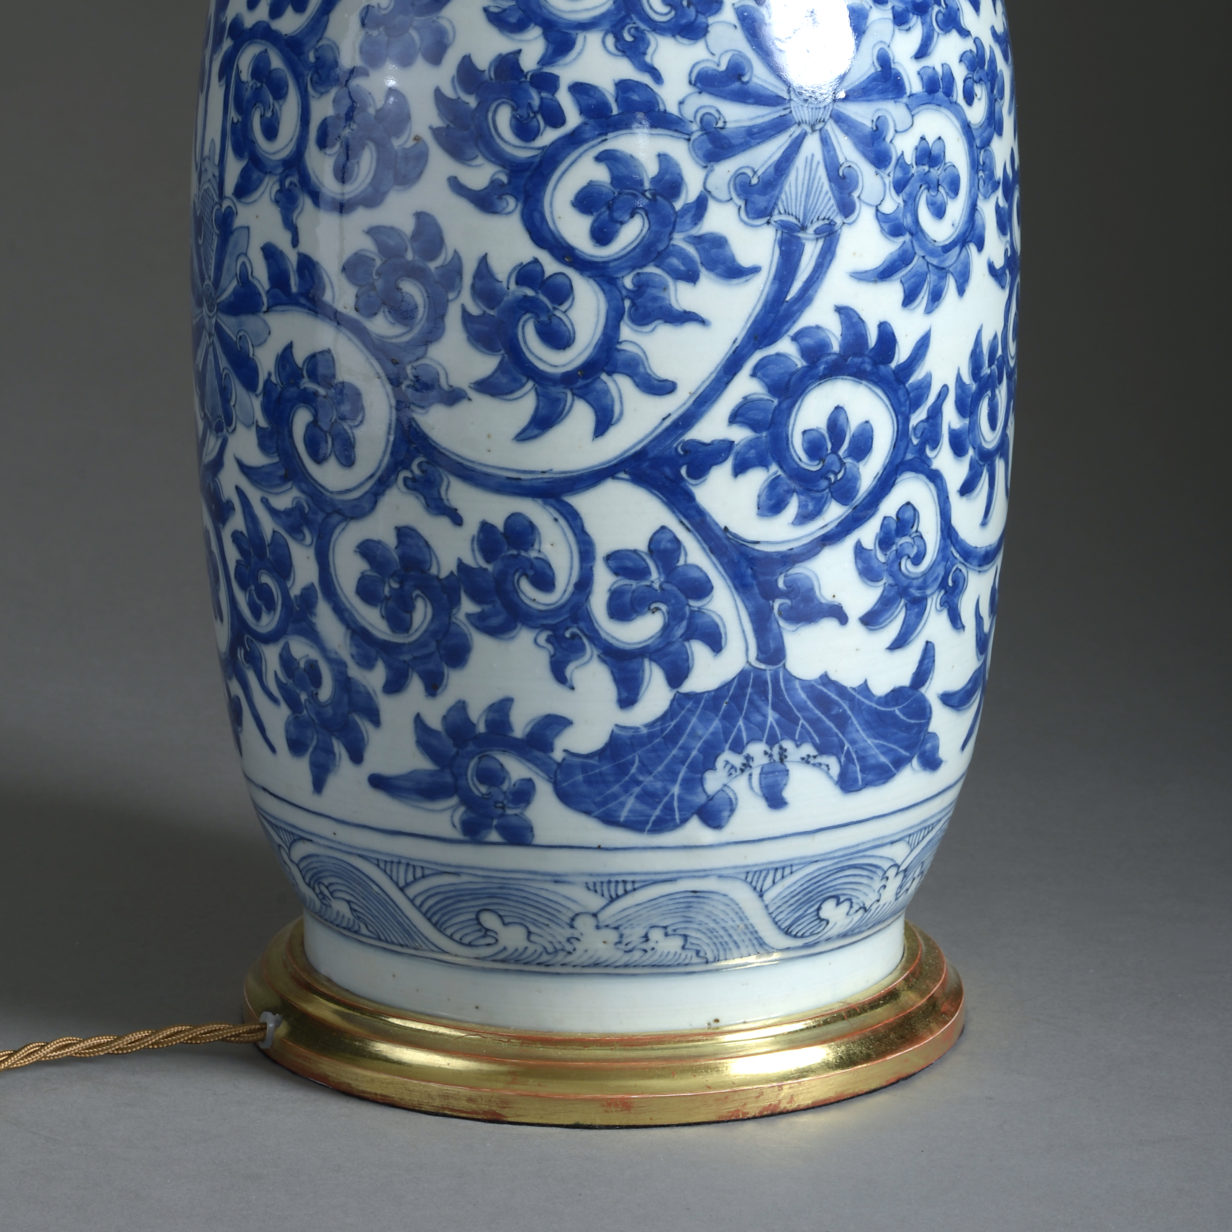 18th century blue & white porcelain vase lamp